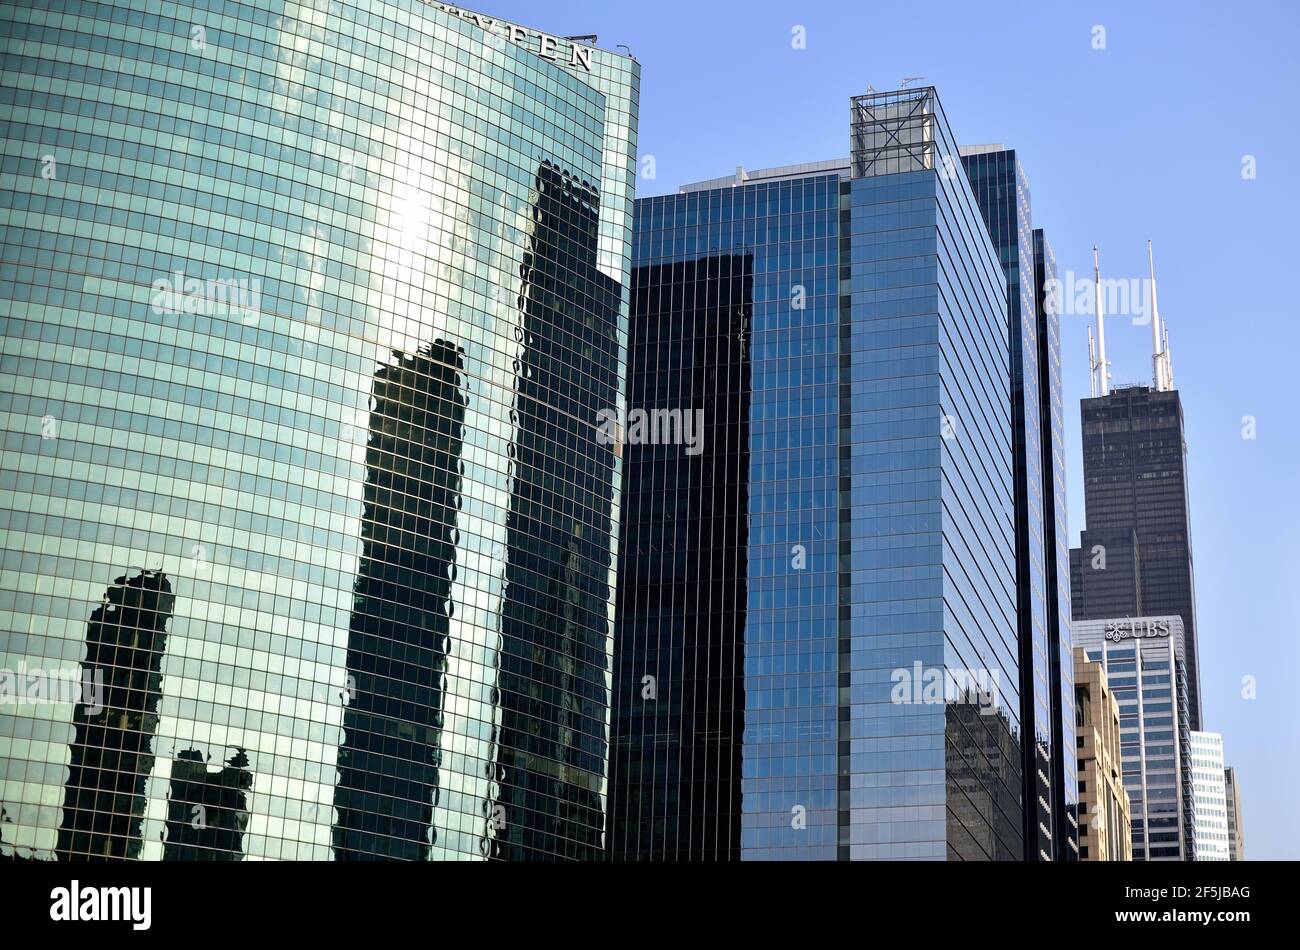 Chicago, Illinois, Steel und schattige Glasgebäude bilden einen Kontrast zu Chicagos höchstem Gebäude, dem Black-hued Willis Tower. Stockfoto